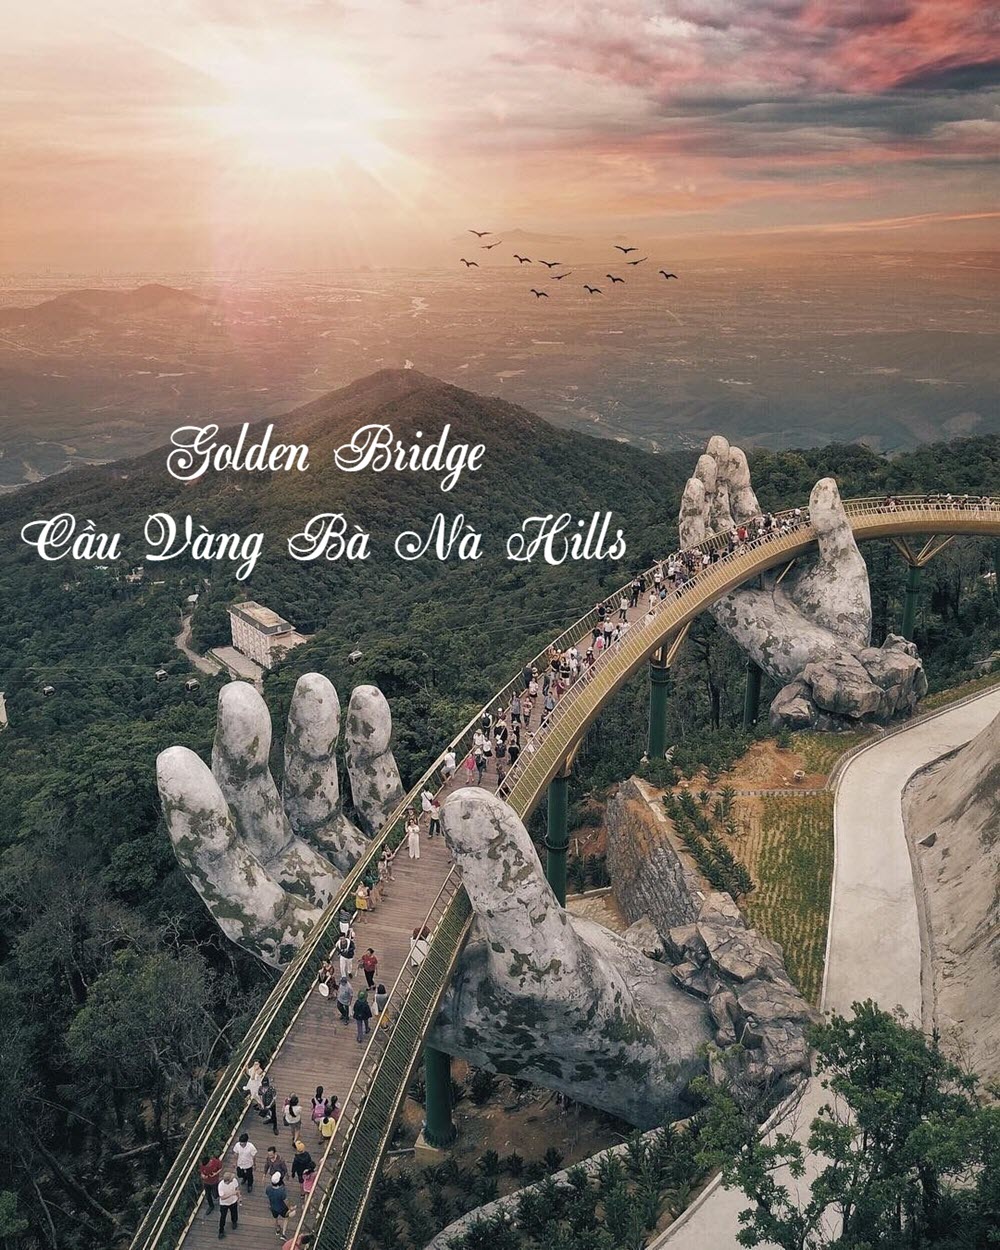 Golden Bridge - Công trình biểu tượng Cầu Vàng Bà Nà Hills